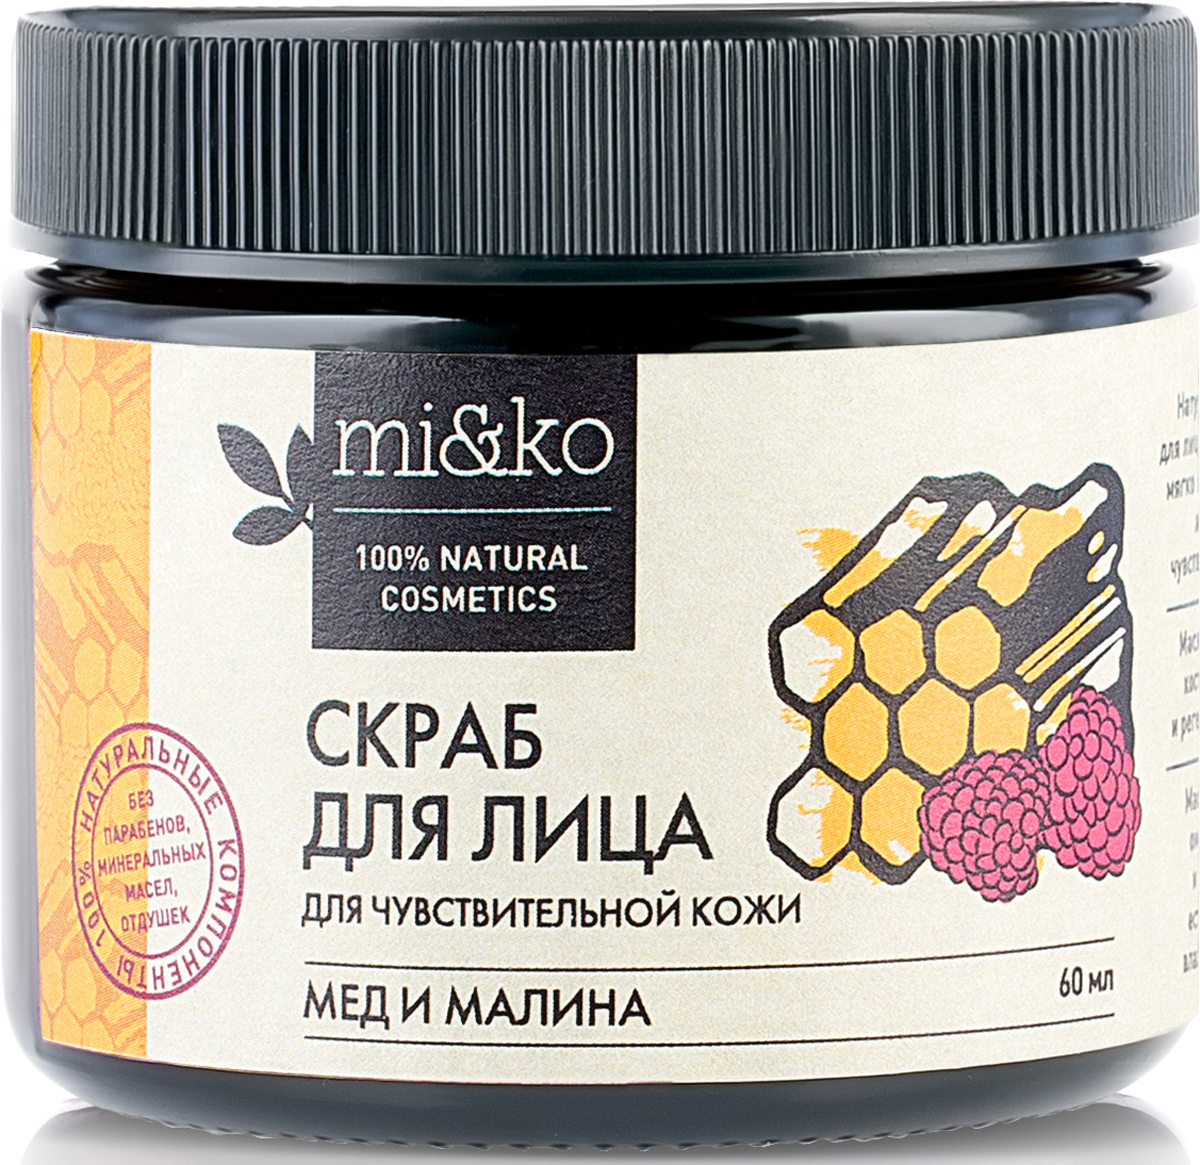 купить Скраб для лица Мед и малина для чувствительной кожи Mi&Ko, 60 мл - заказ и доставка в Москве и Санкт-Петербурге